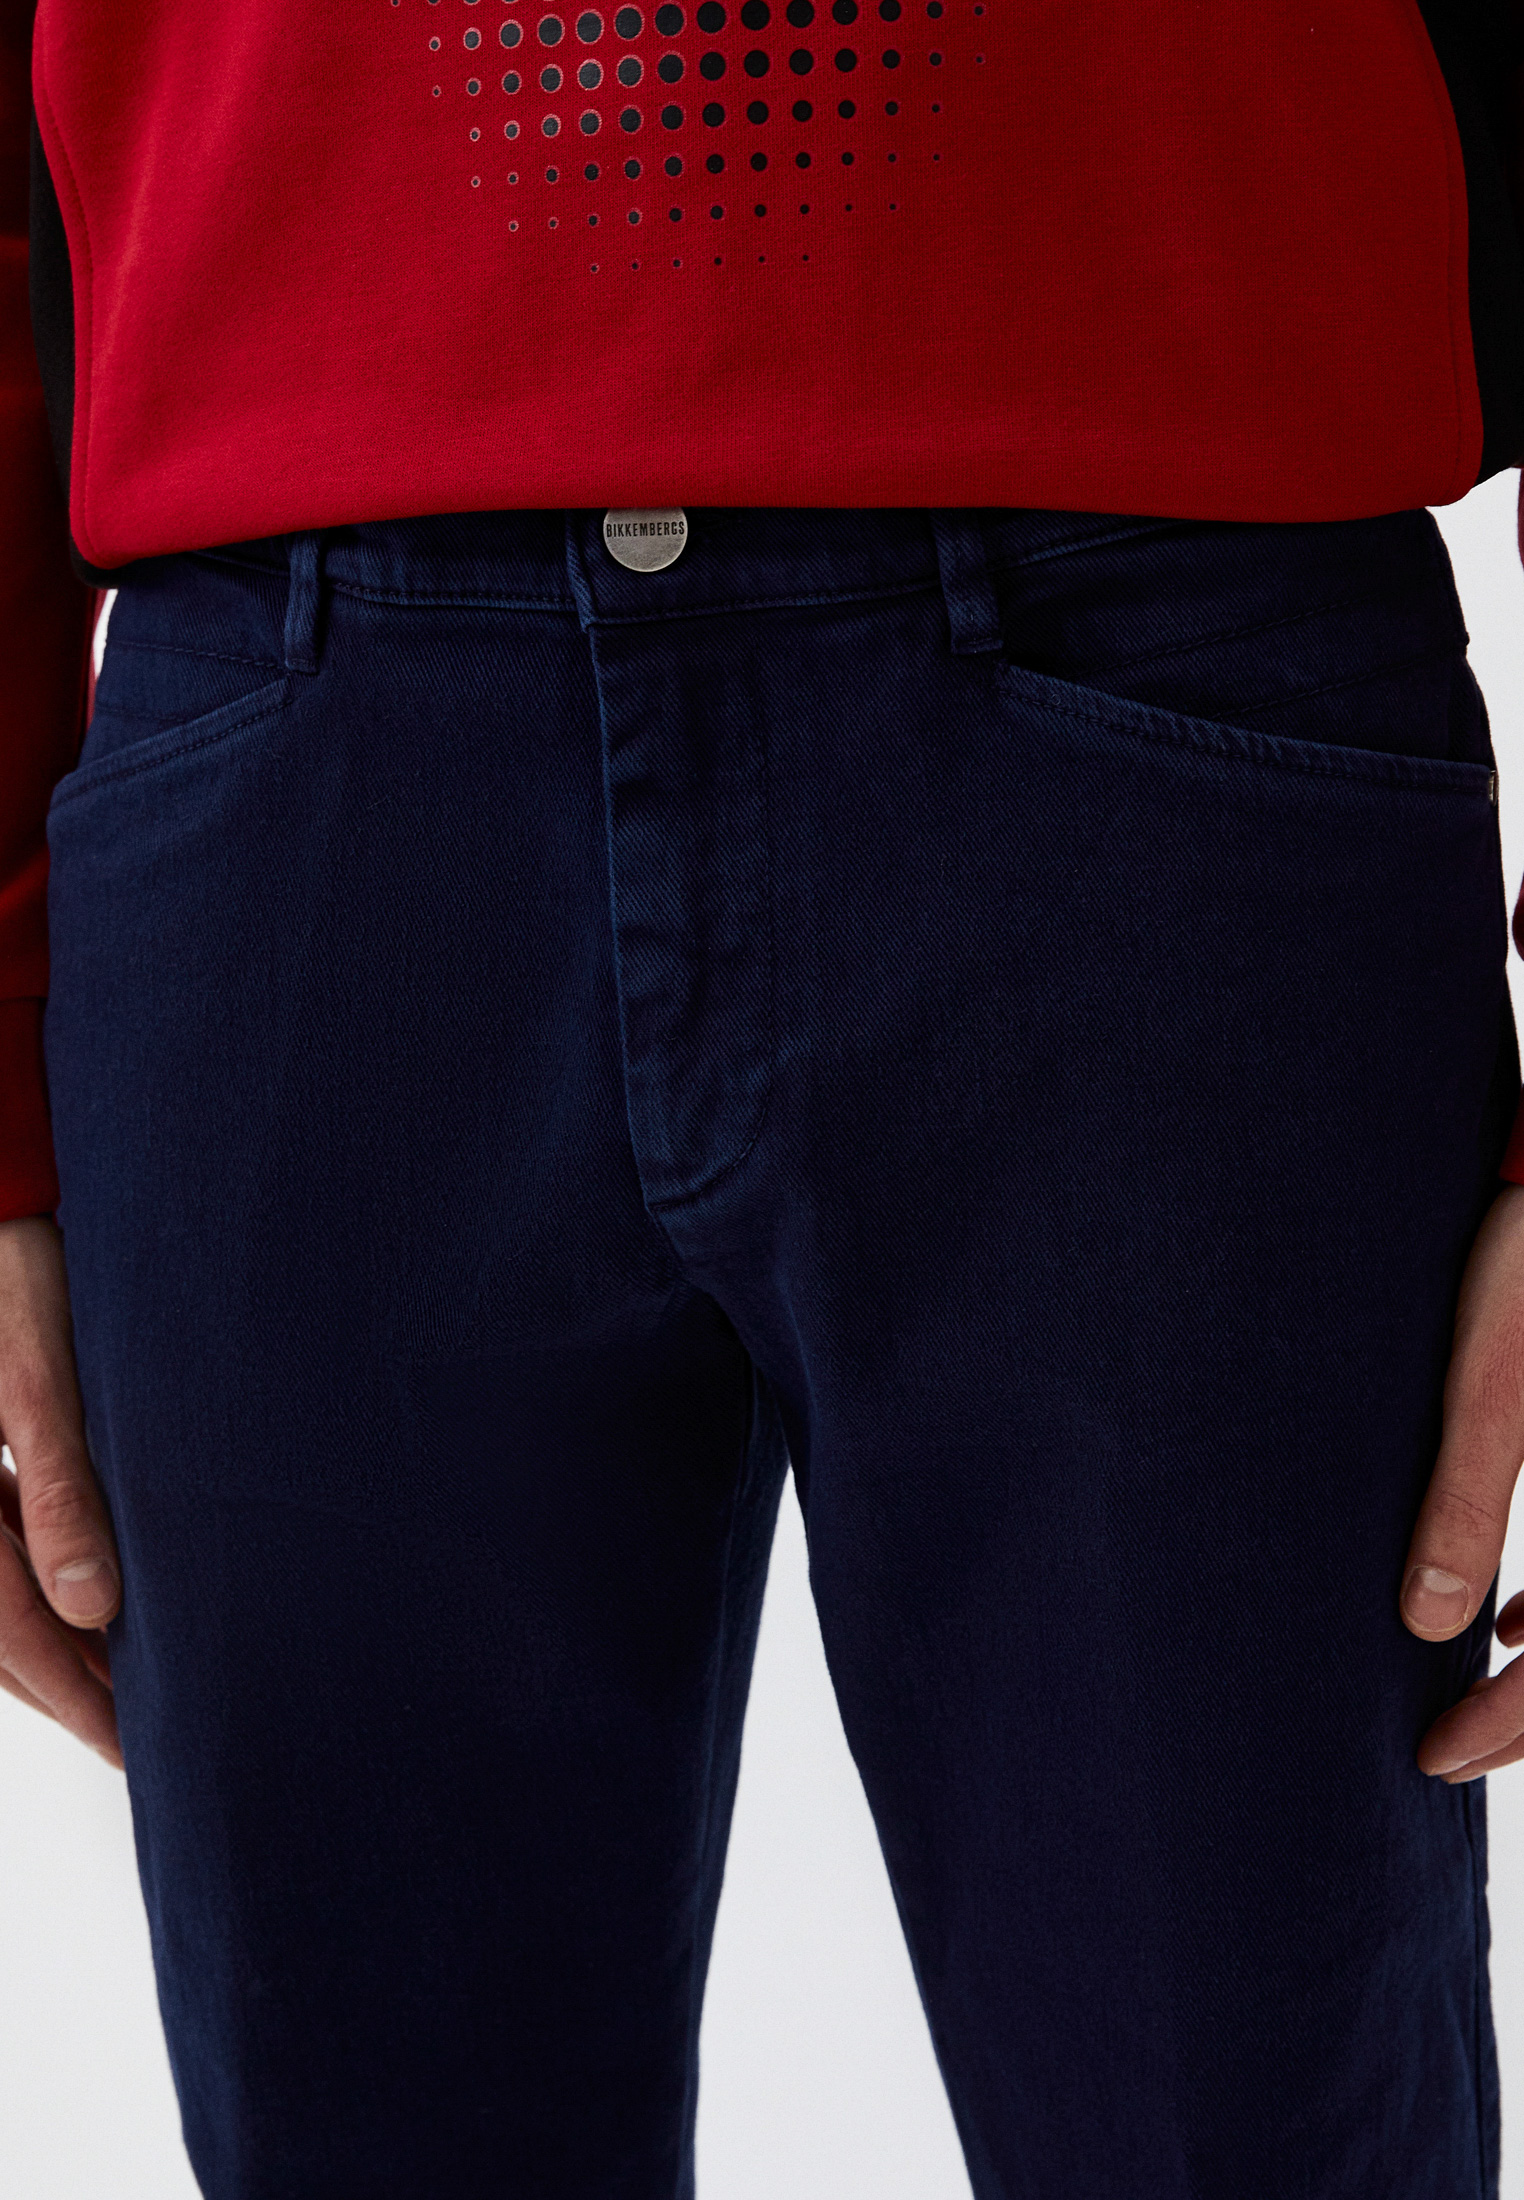 Мужские повседневные брюки Bikkembergs (Биккембергс) C P 202 70 S 3074: изображение 4